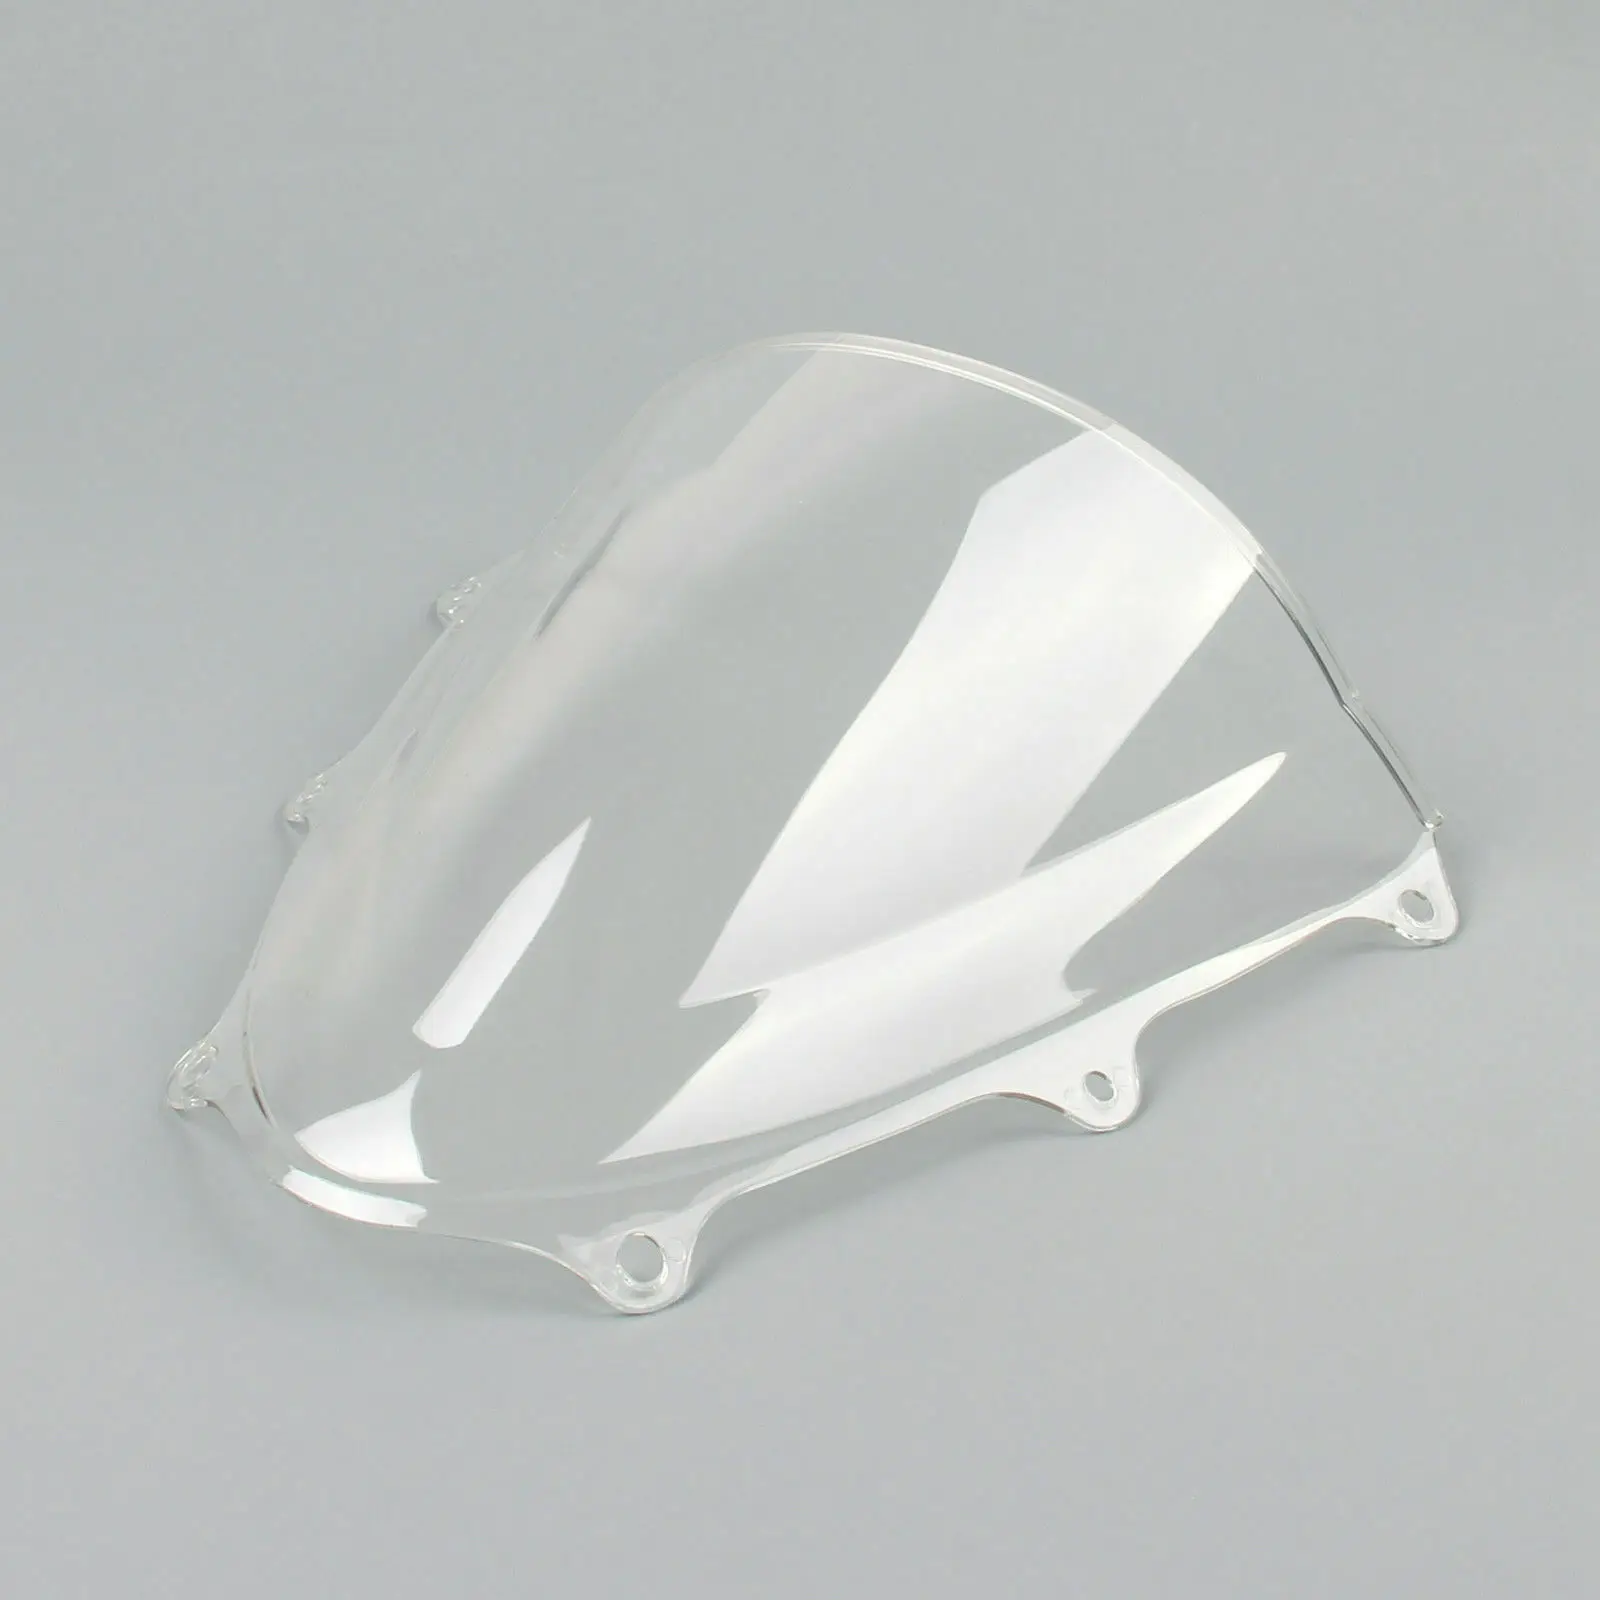 Motorcycle Clear  Double Bubble Windscreen Windshield Screen ABS Shield Fit For Suzuki GSXR600 GSX-R750 2011-2015 K11